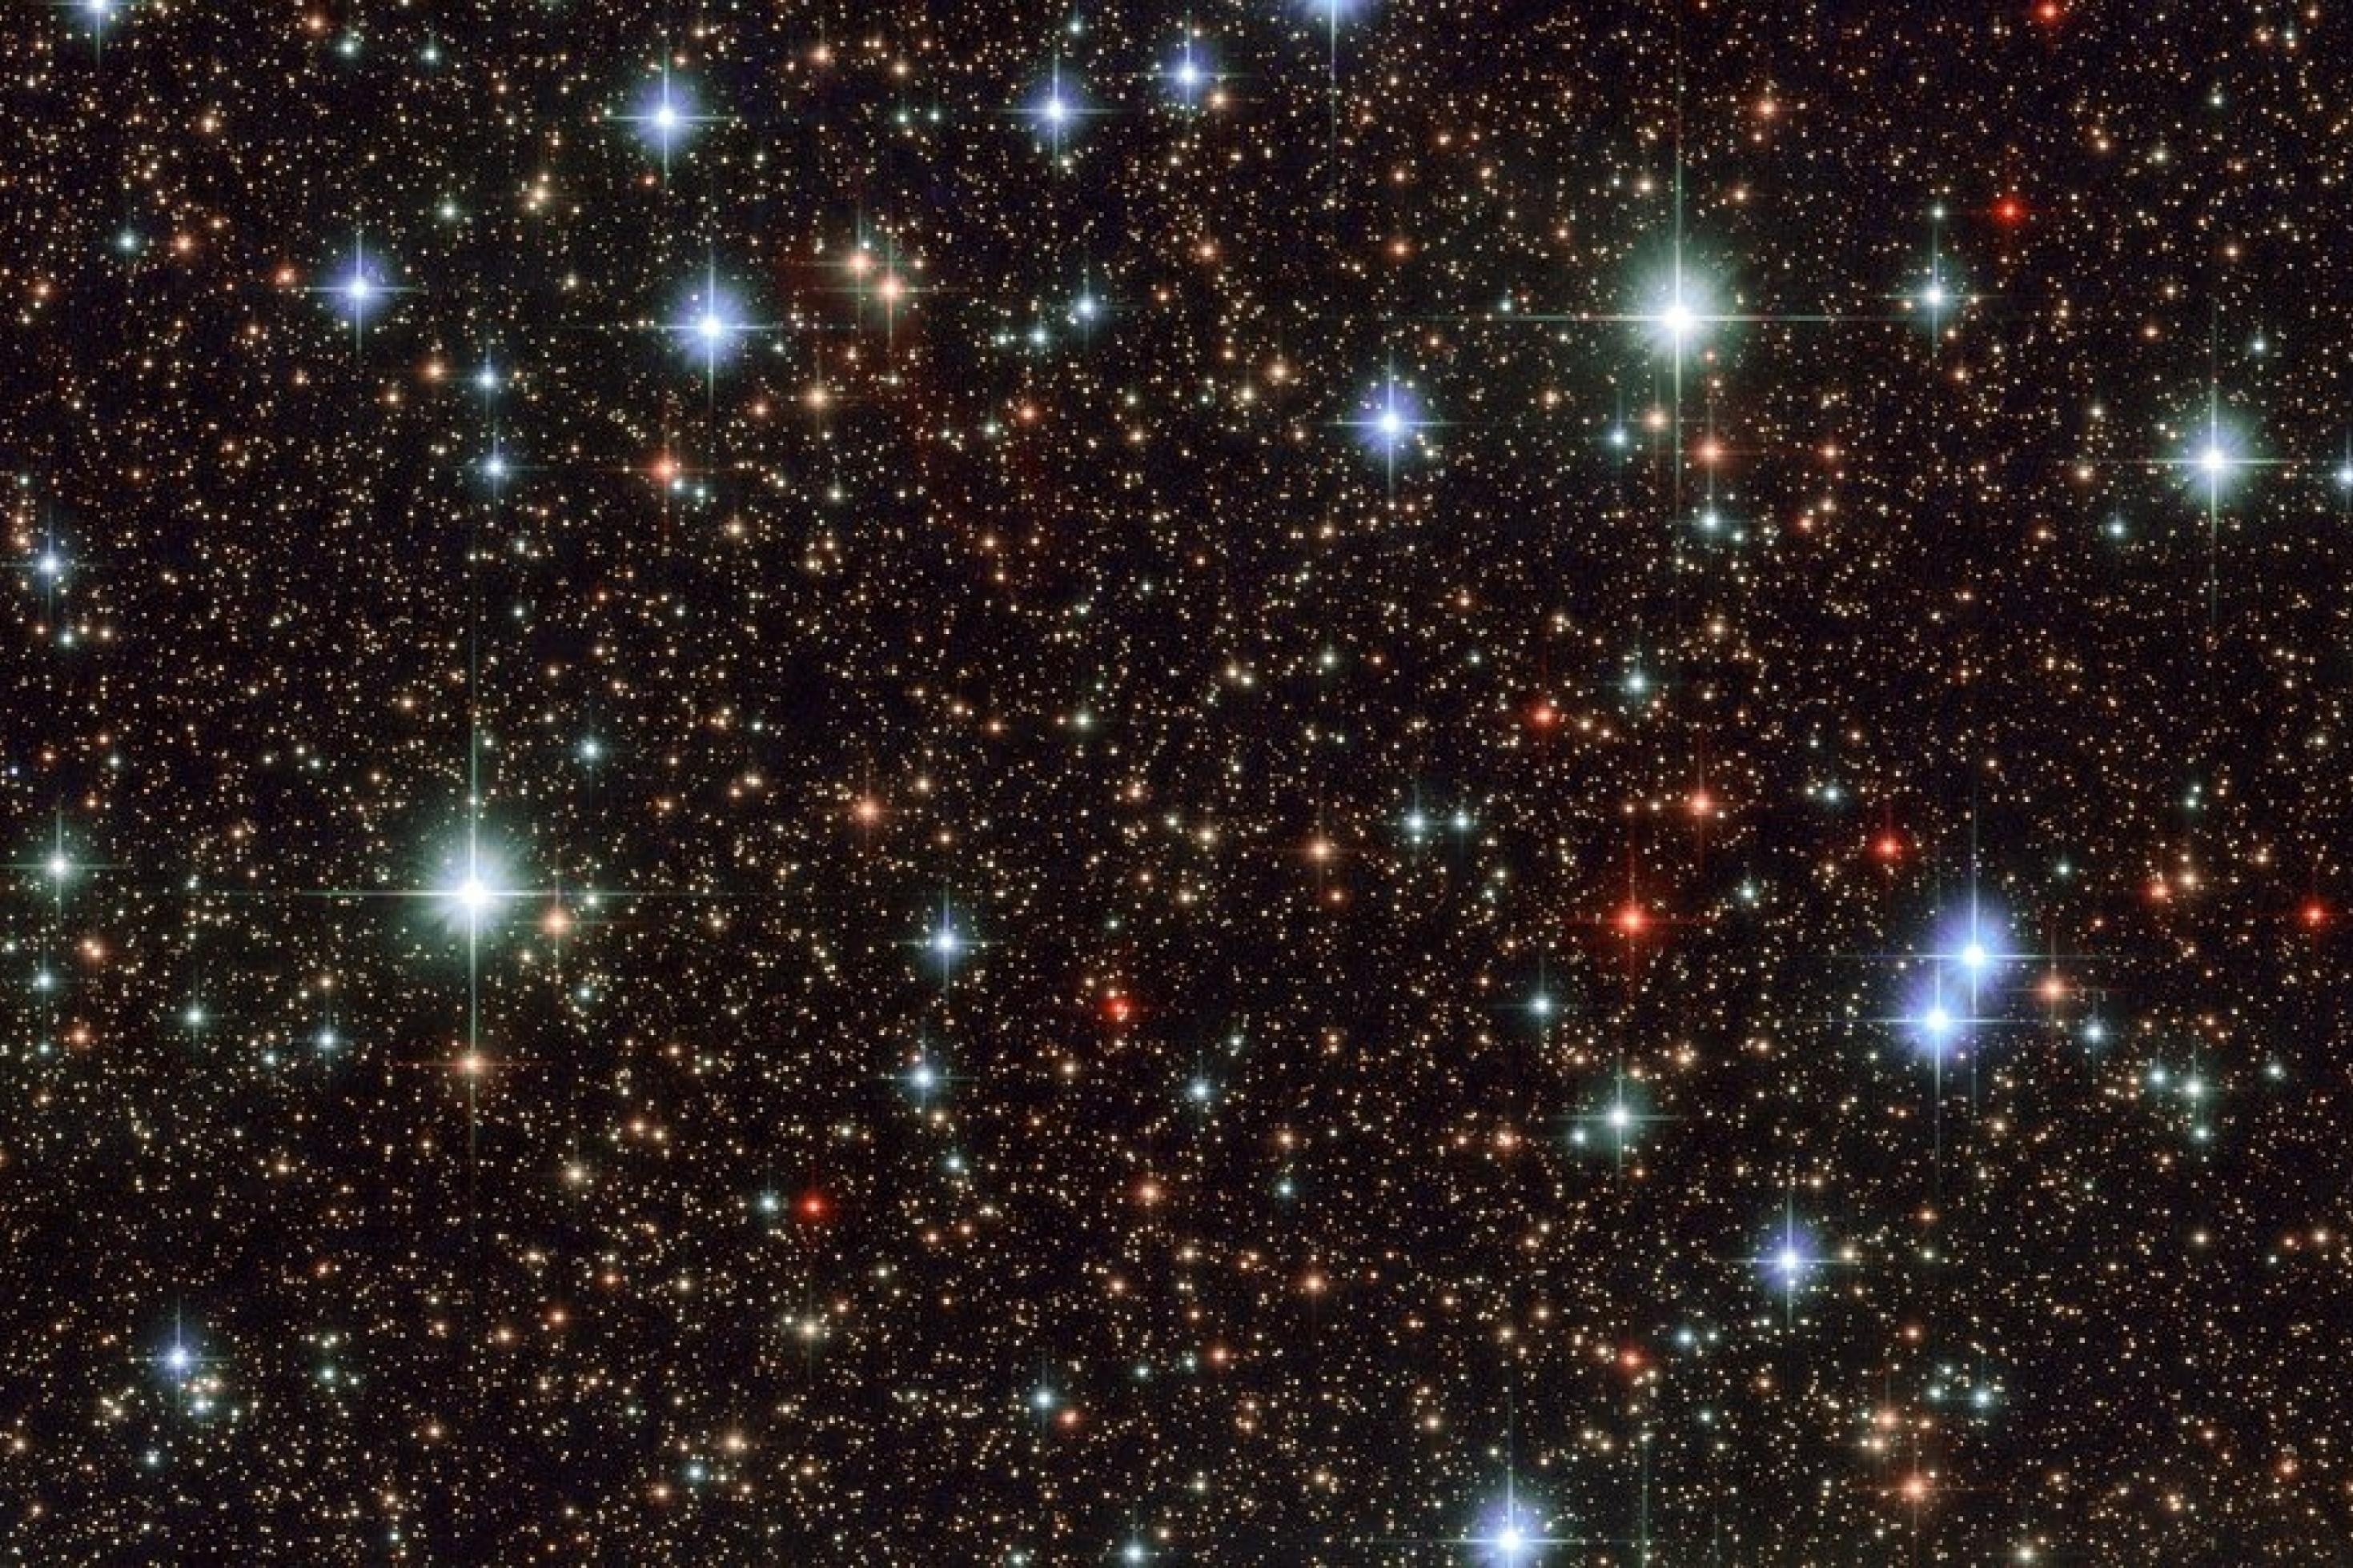 Ein winziger Himmelsausschnitt im Sternbild Schütze, aufgenommen mit dem Weltraumteleskop Hubble. Wir sehen nur einen Bruchteil der sternenreichen Milchstraße – und stellen uns vor, wie viele dieser Sterne wohl von Planeten umkreist werden und auf wie vielen von ihnen wohl Lebensformen denkbar sind.